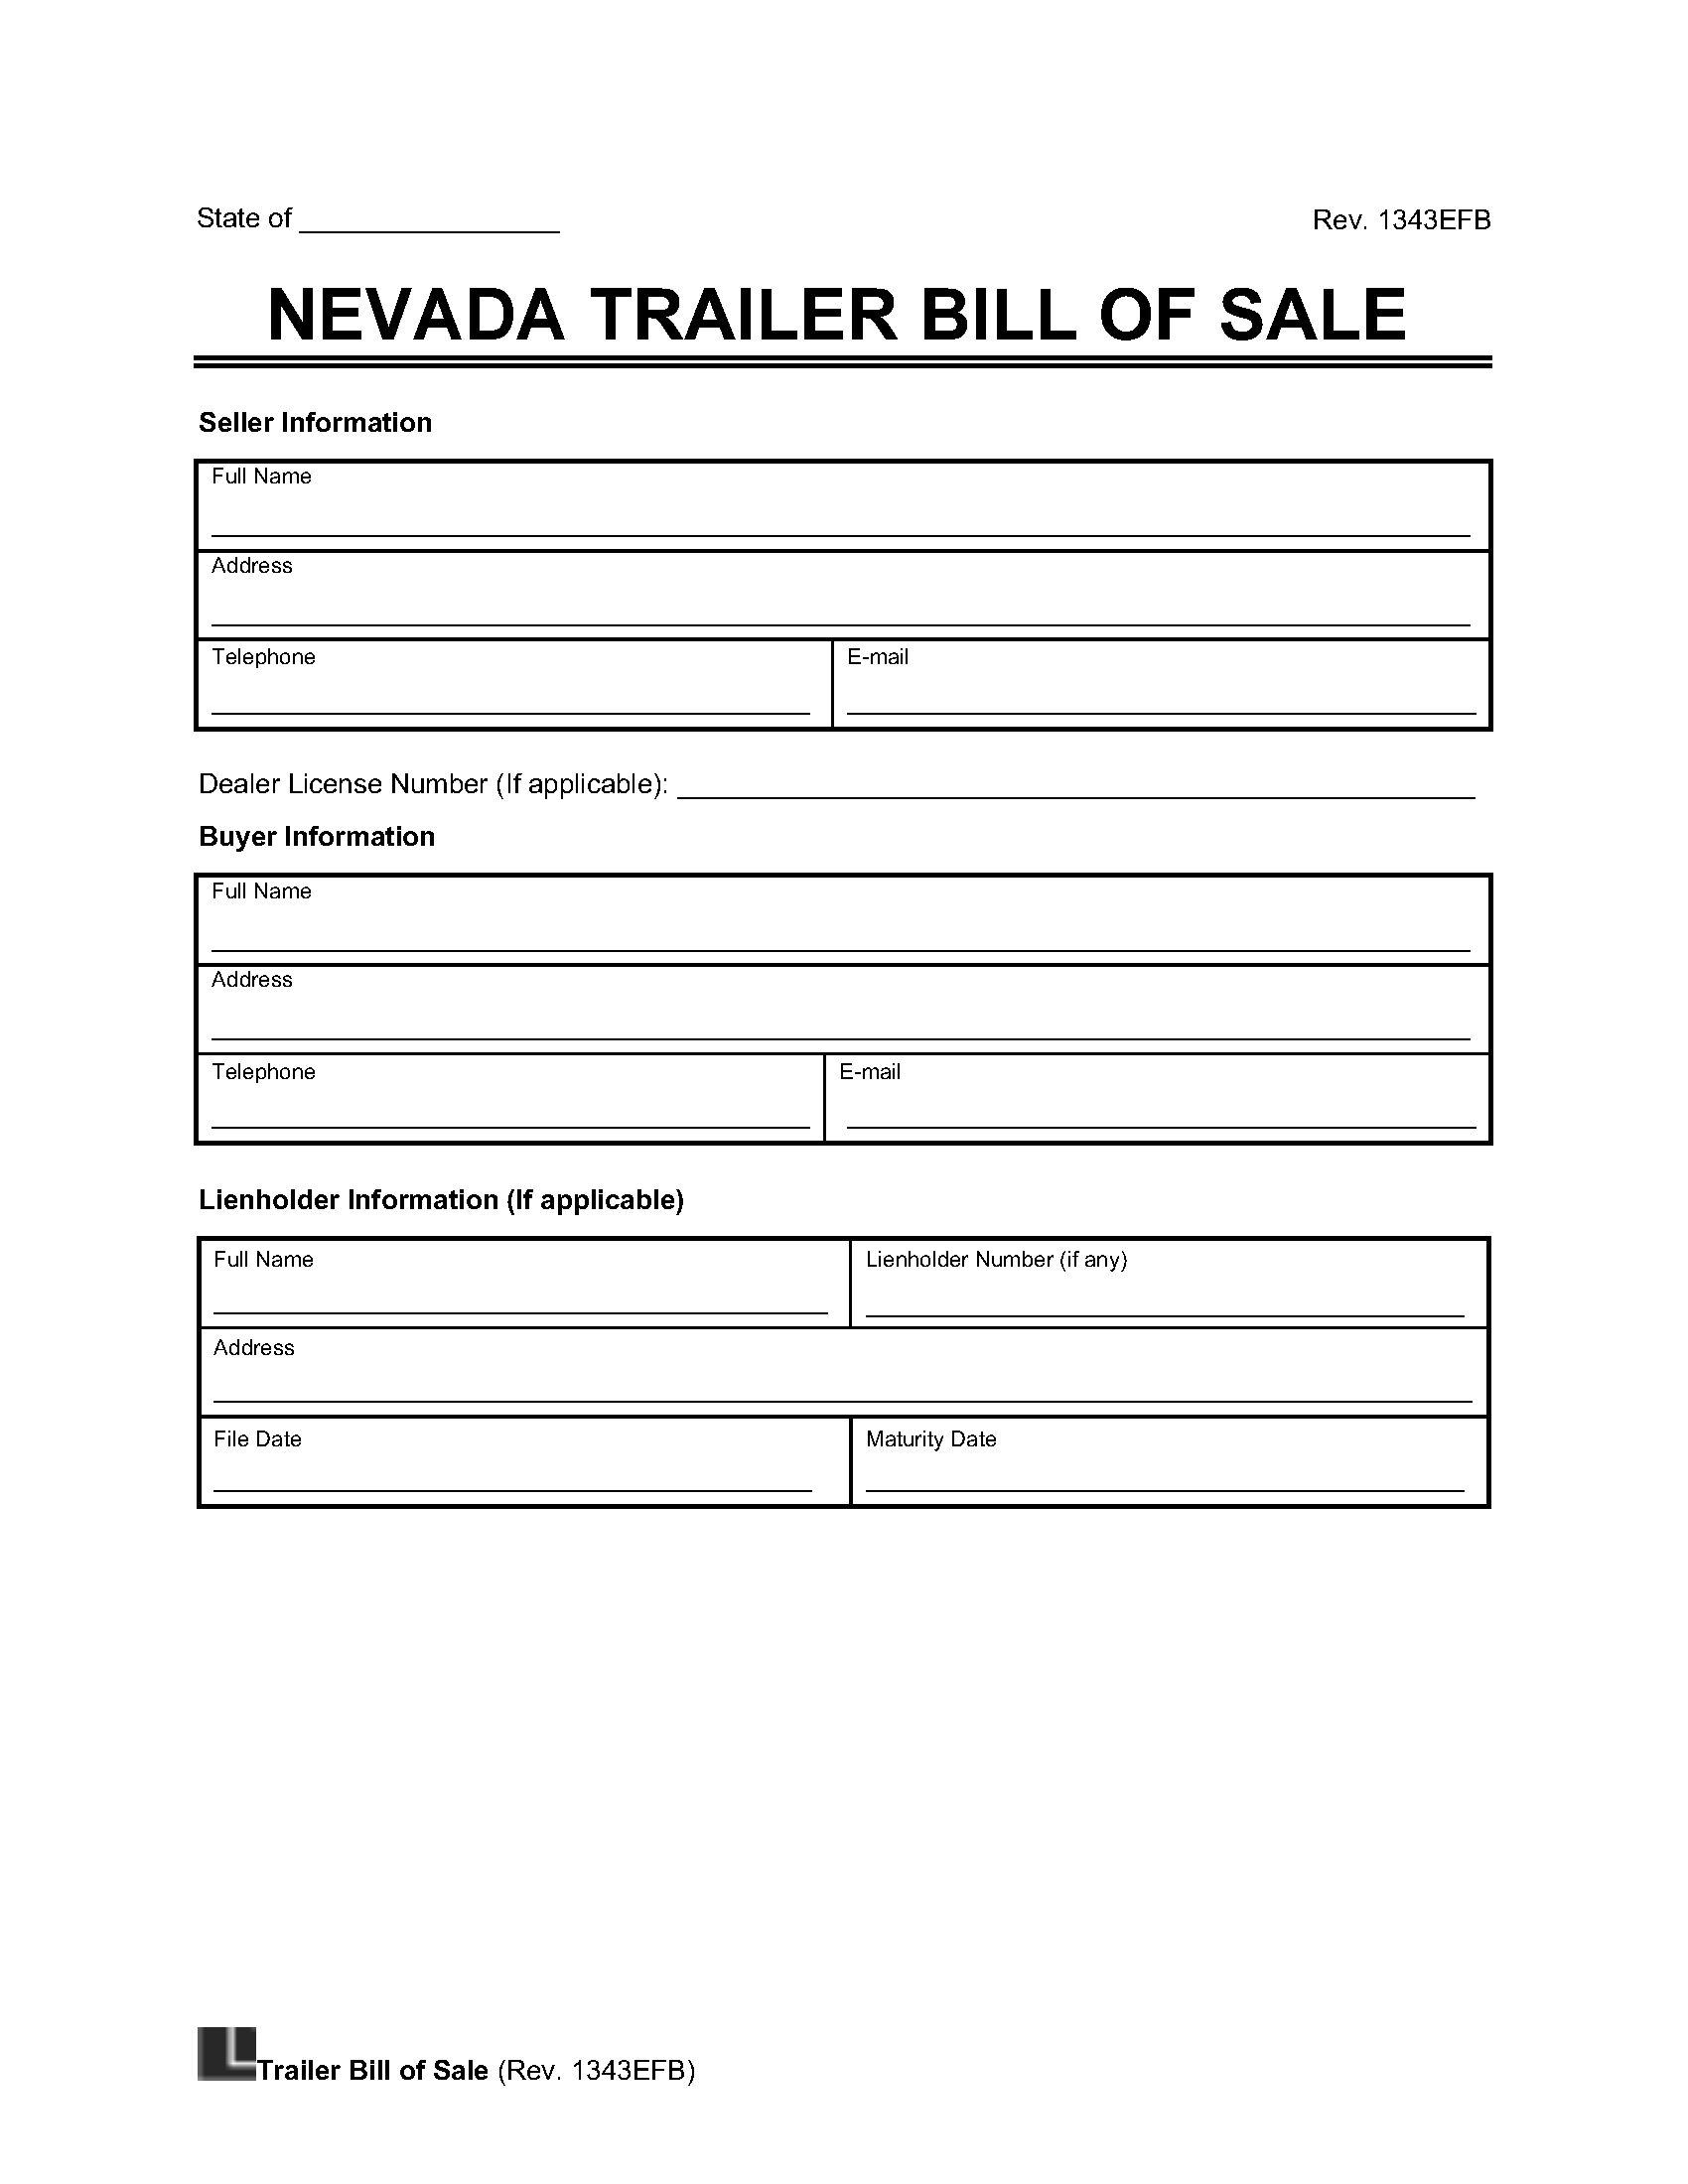 Nevada Trailer Bill of Sale screenshot